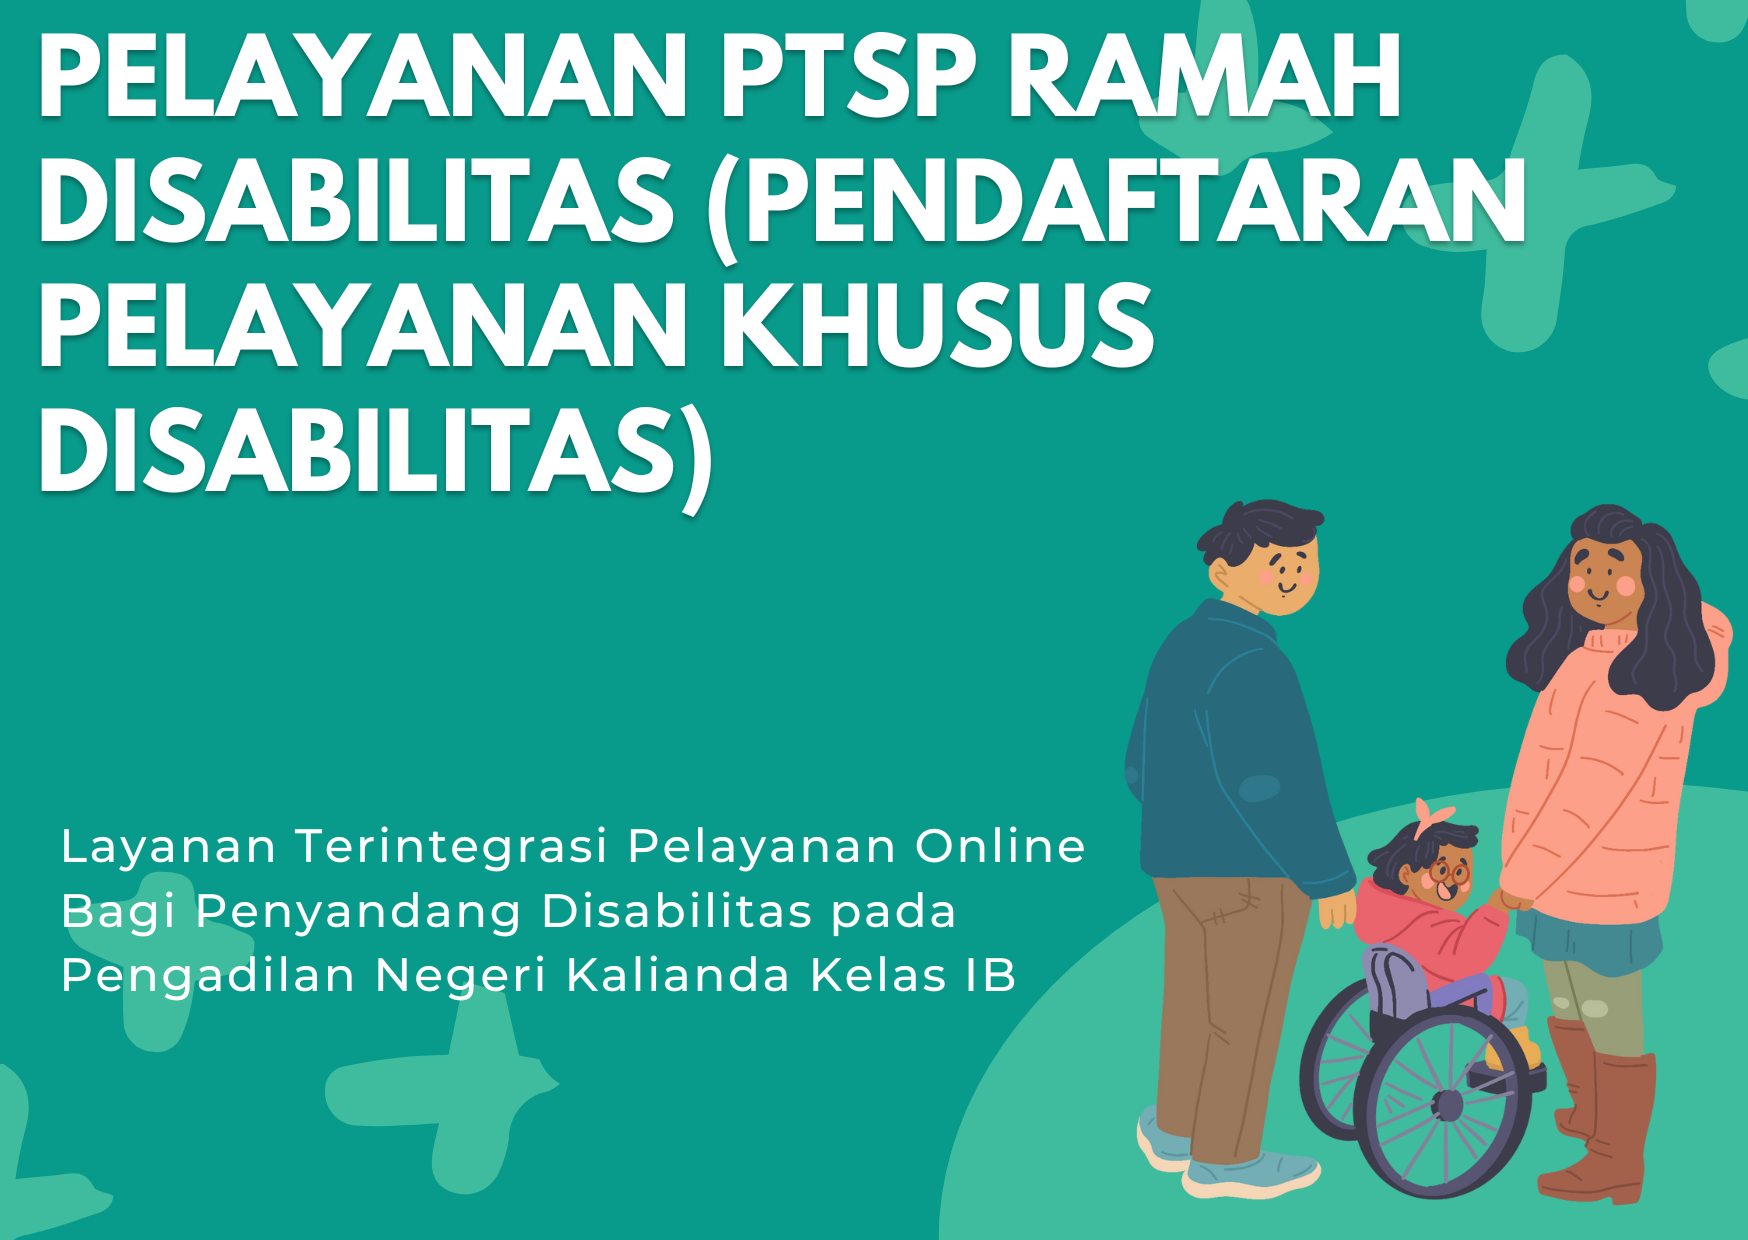 Form Pendaftaran Layanan PTSP (Registrasi Online) Bagi Penyandang Disabilitas